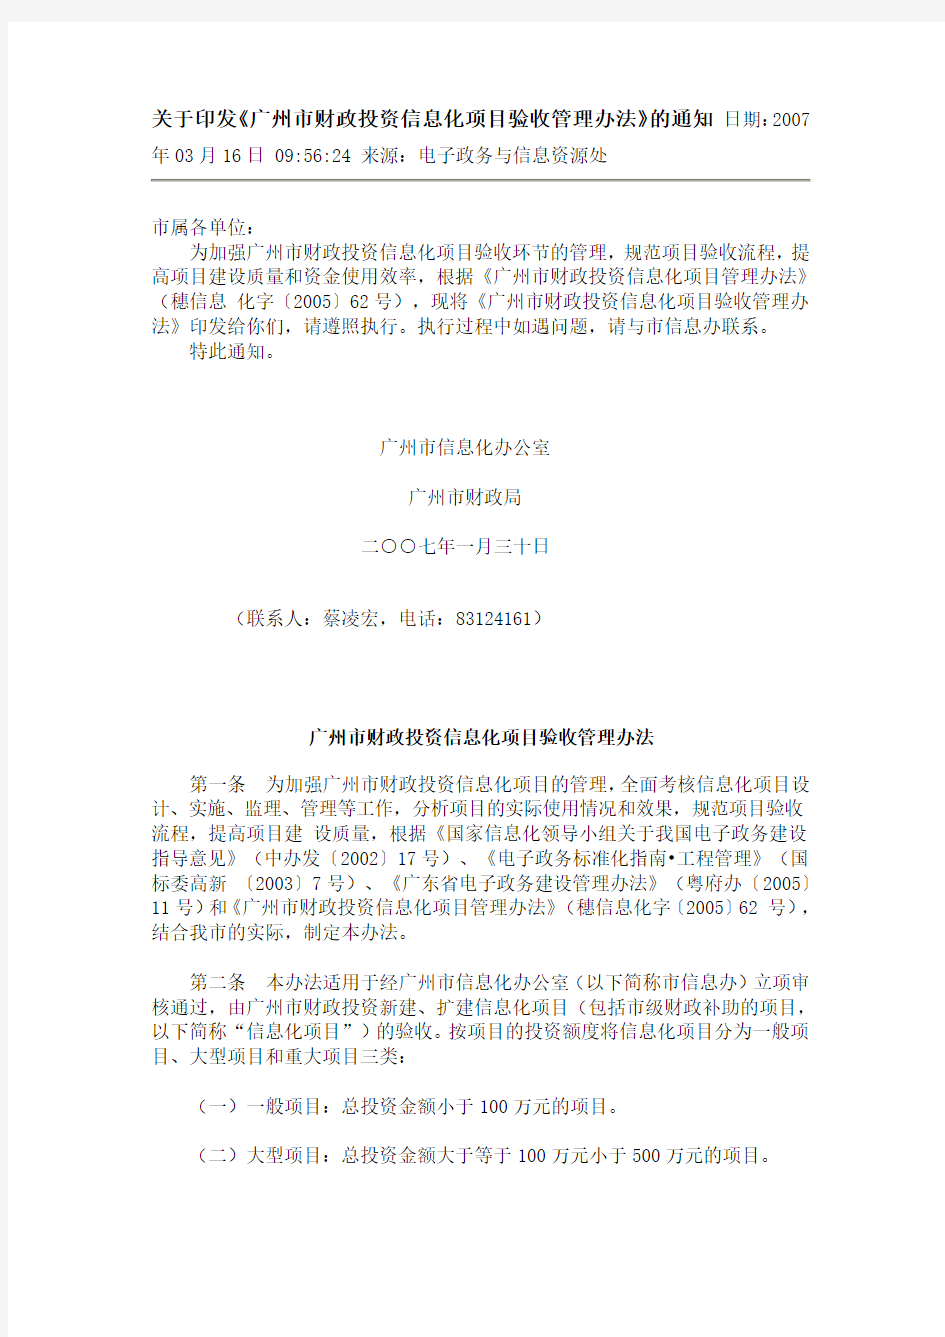 广州市财政投资信息化项目验收管理办法(穗信息化字〔2007〕6号)